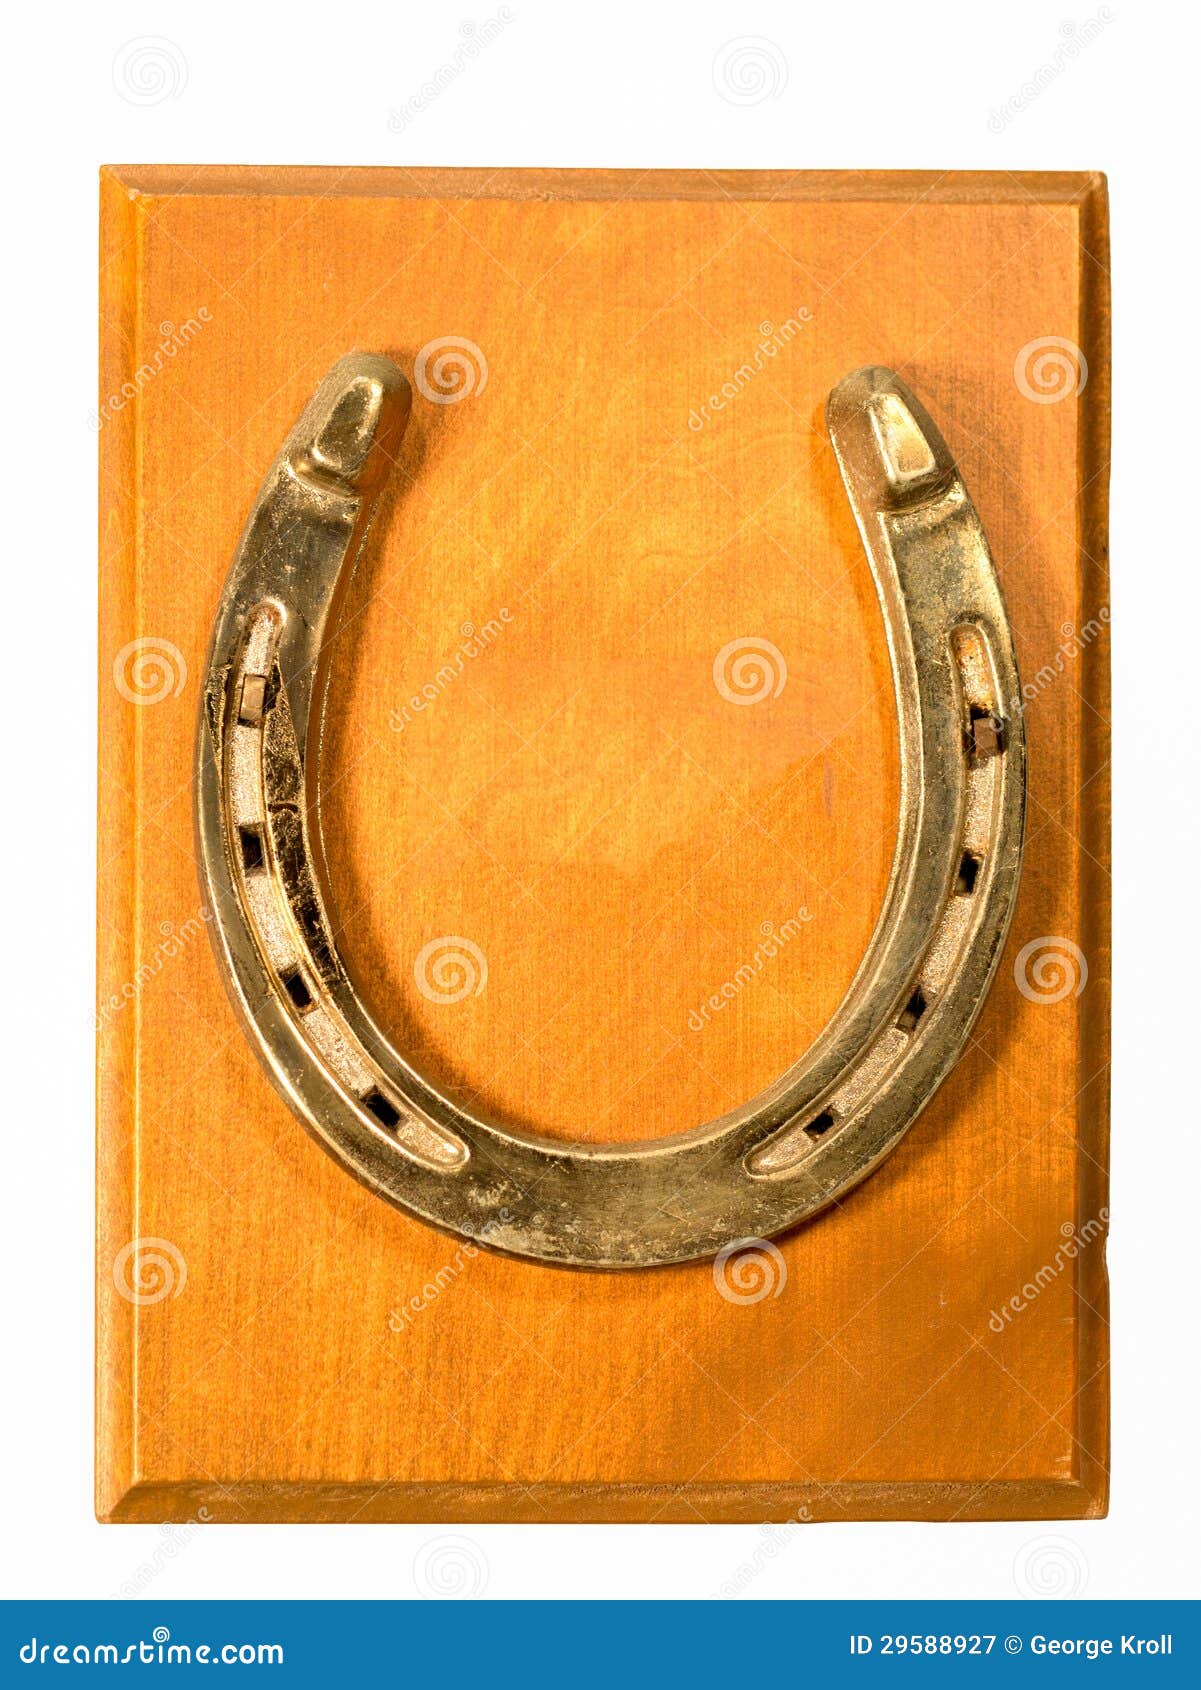 Horseshoe Stock Photo - Download Image Now - Horseshoe, Luck, Gold